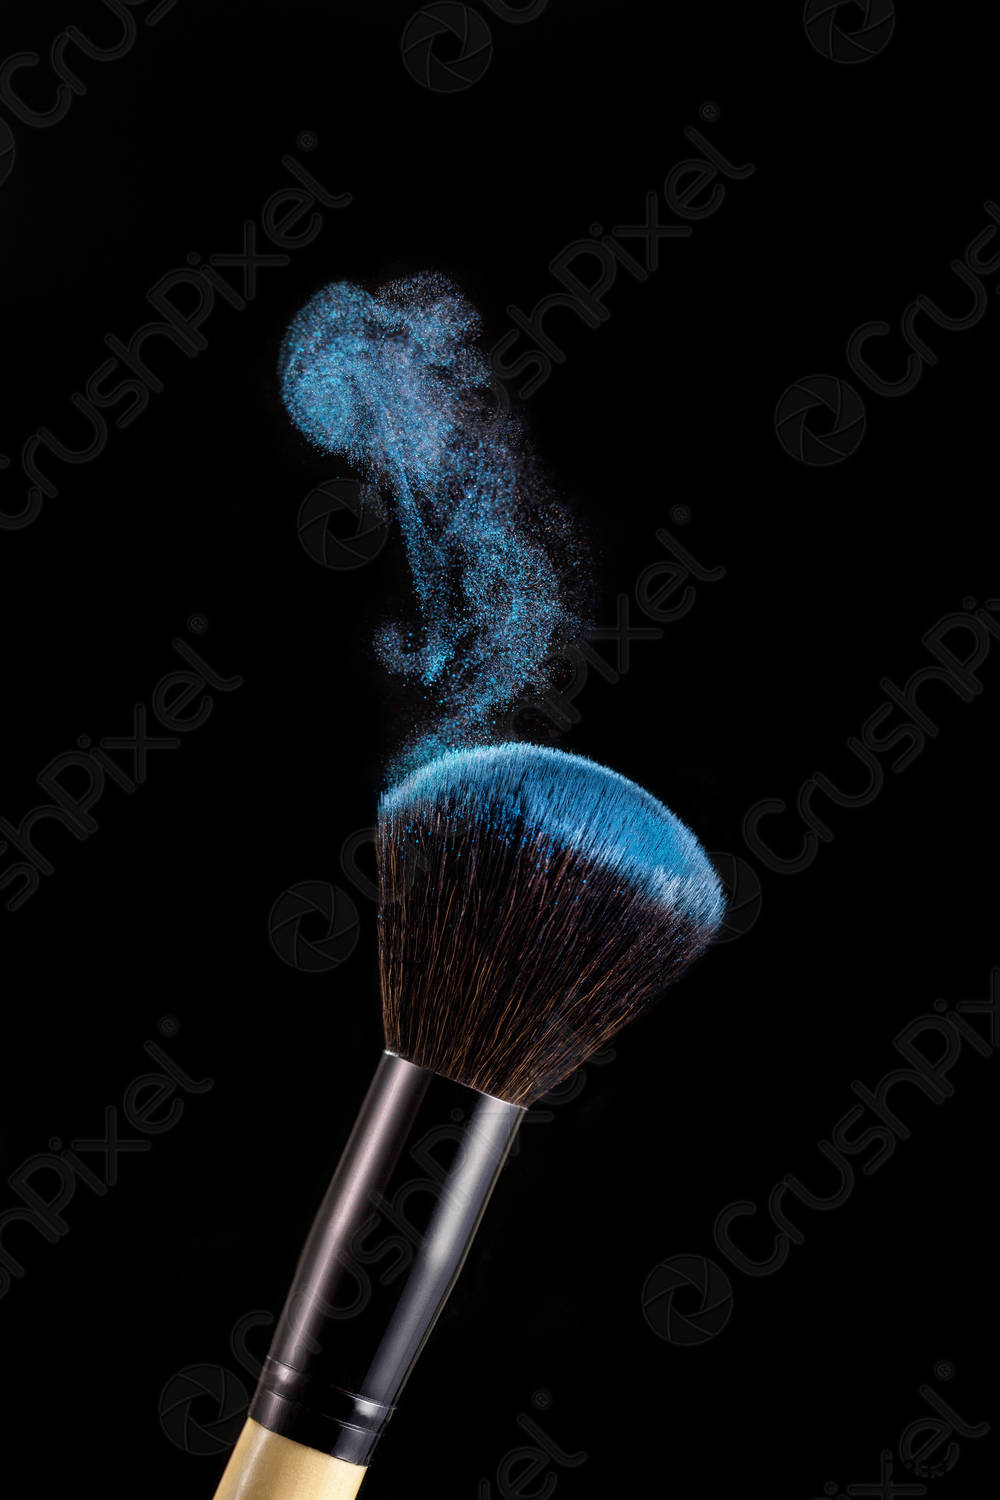 Make up brush with powder splashes on black background